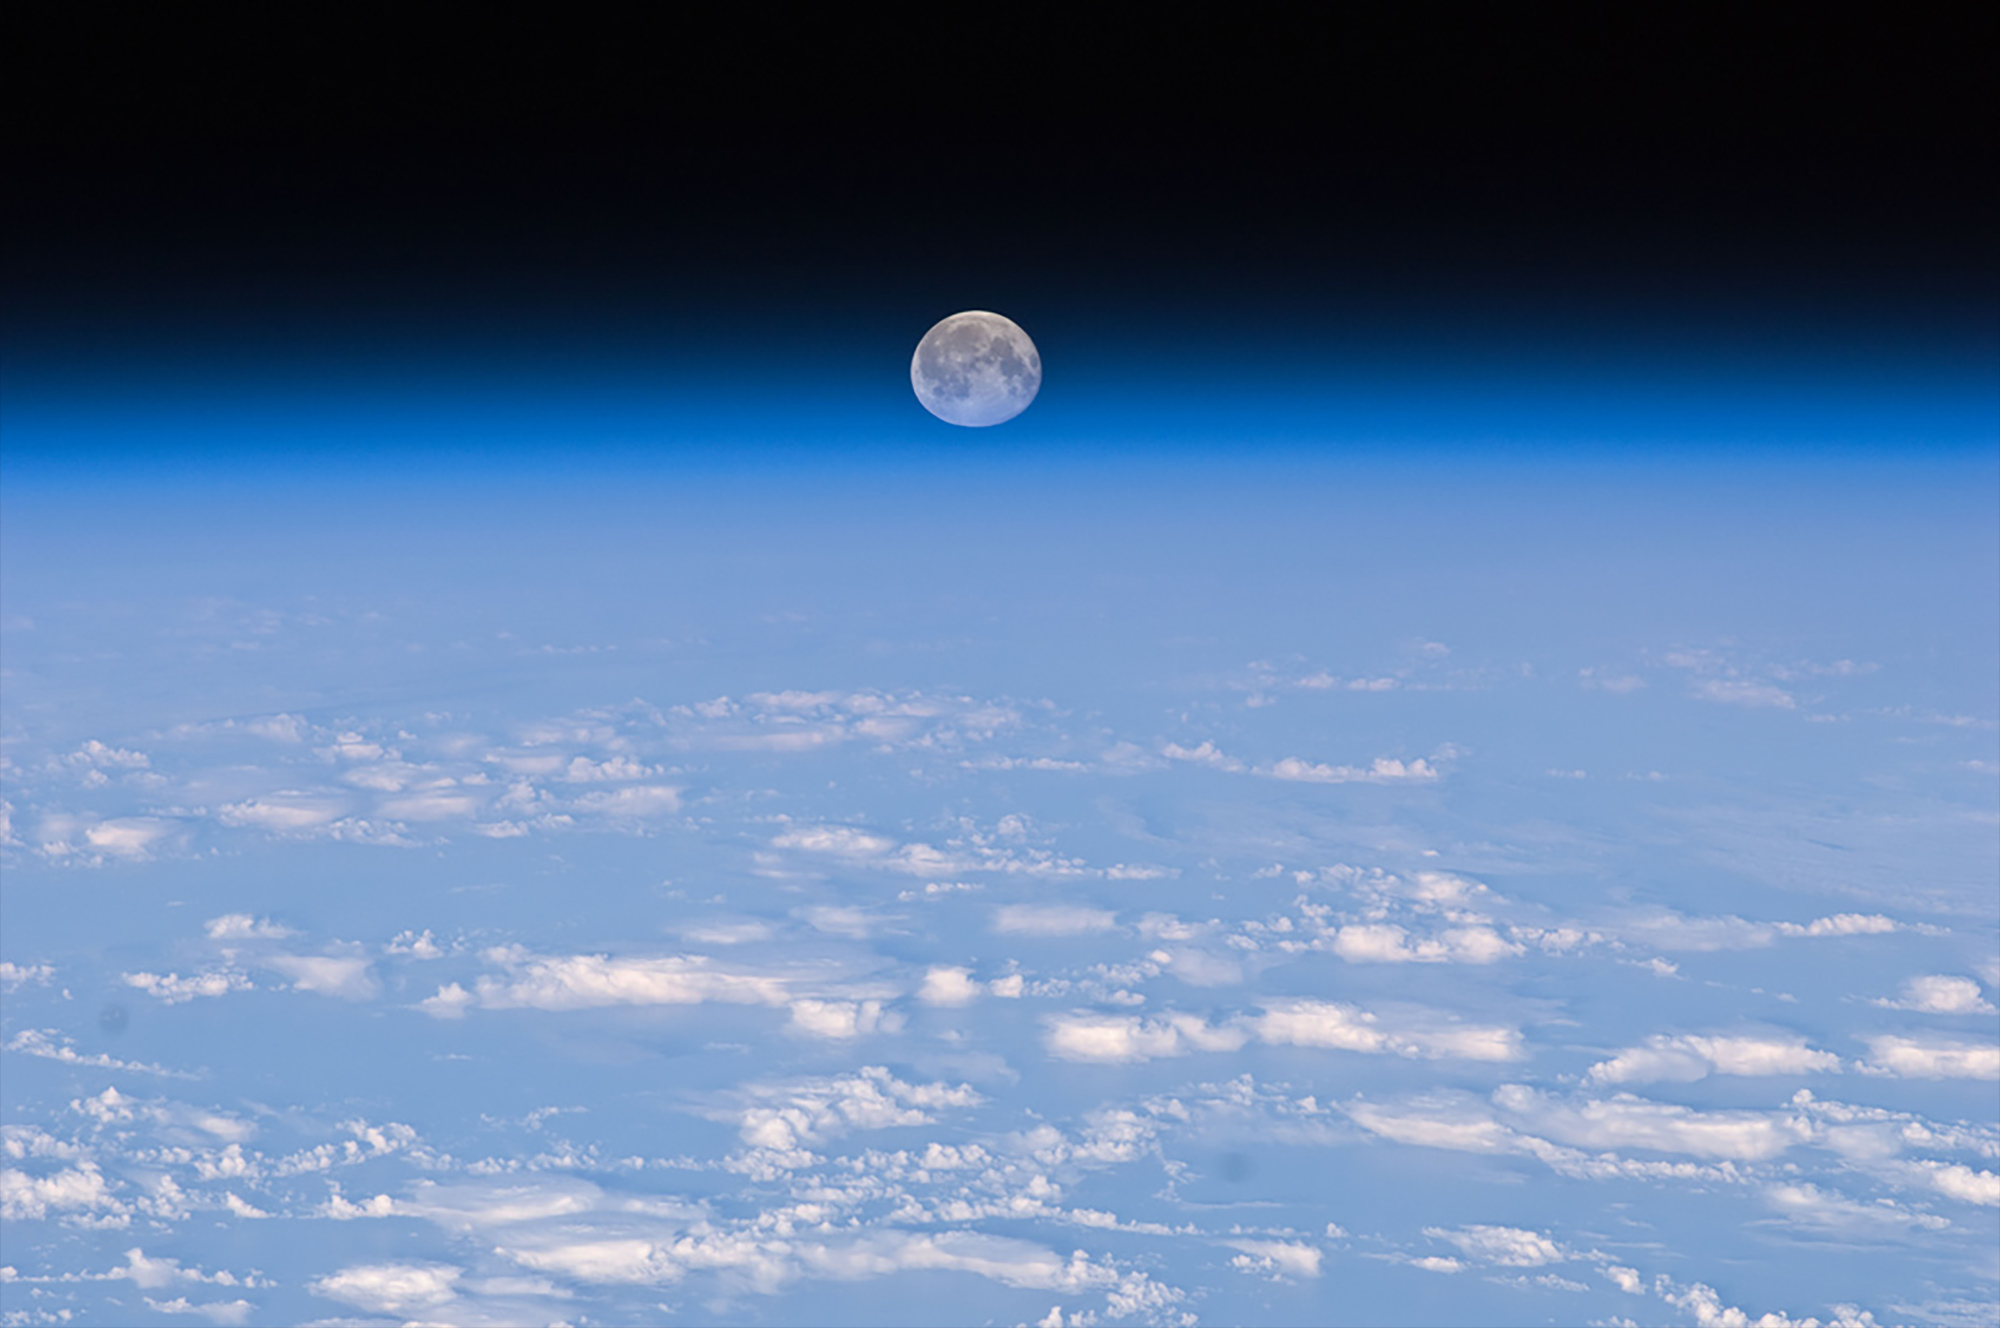 La Lune, au-dessus de l'atmosphère terrestre, vue depuis la Station spatiale internationale. © Nasa